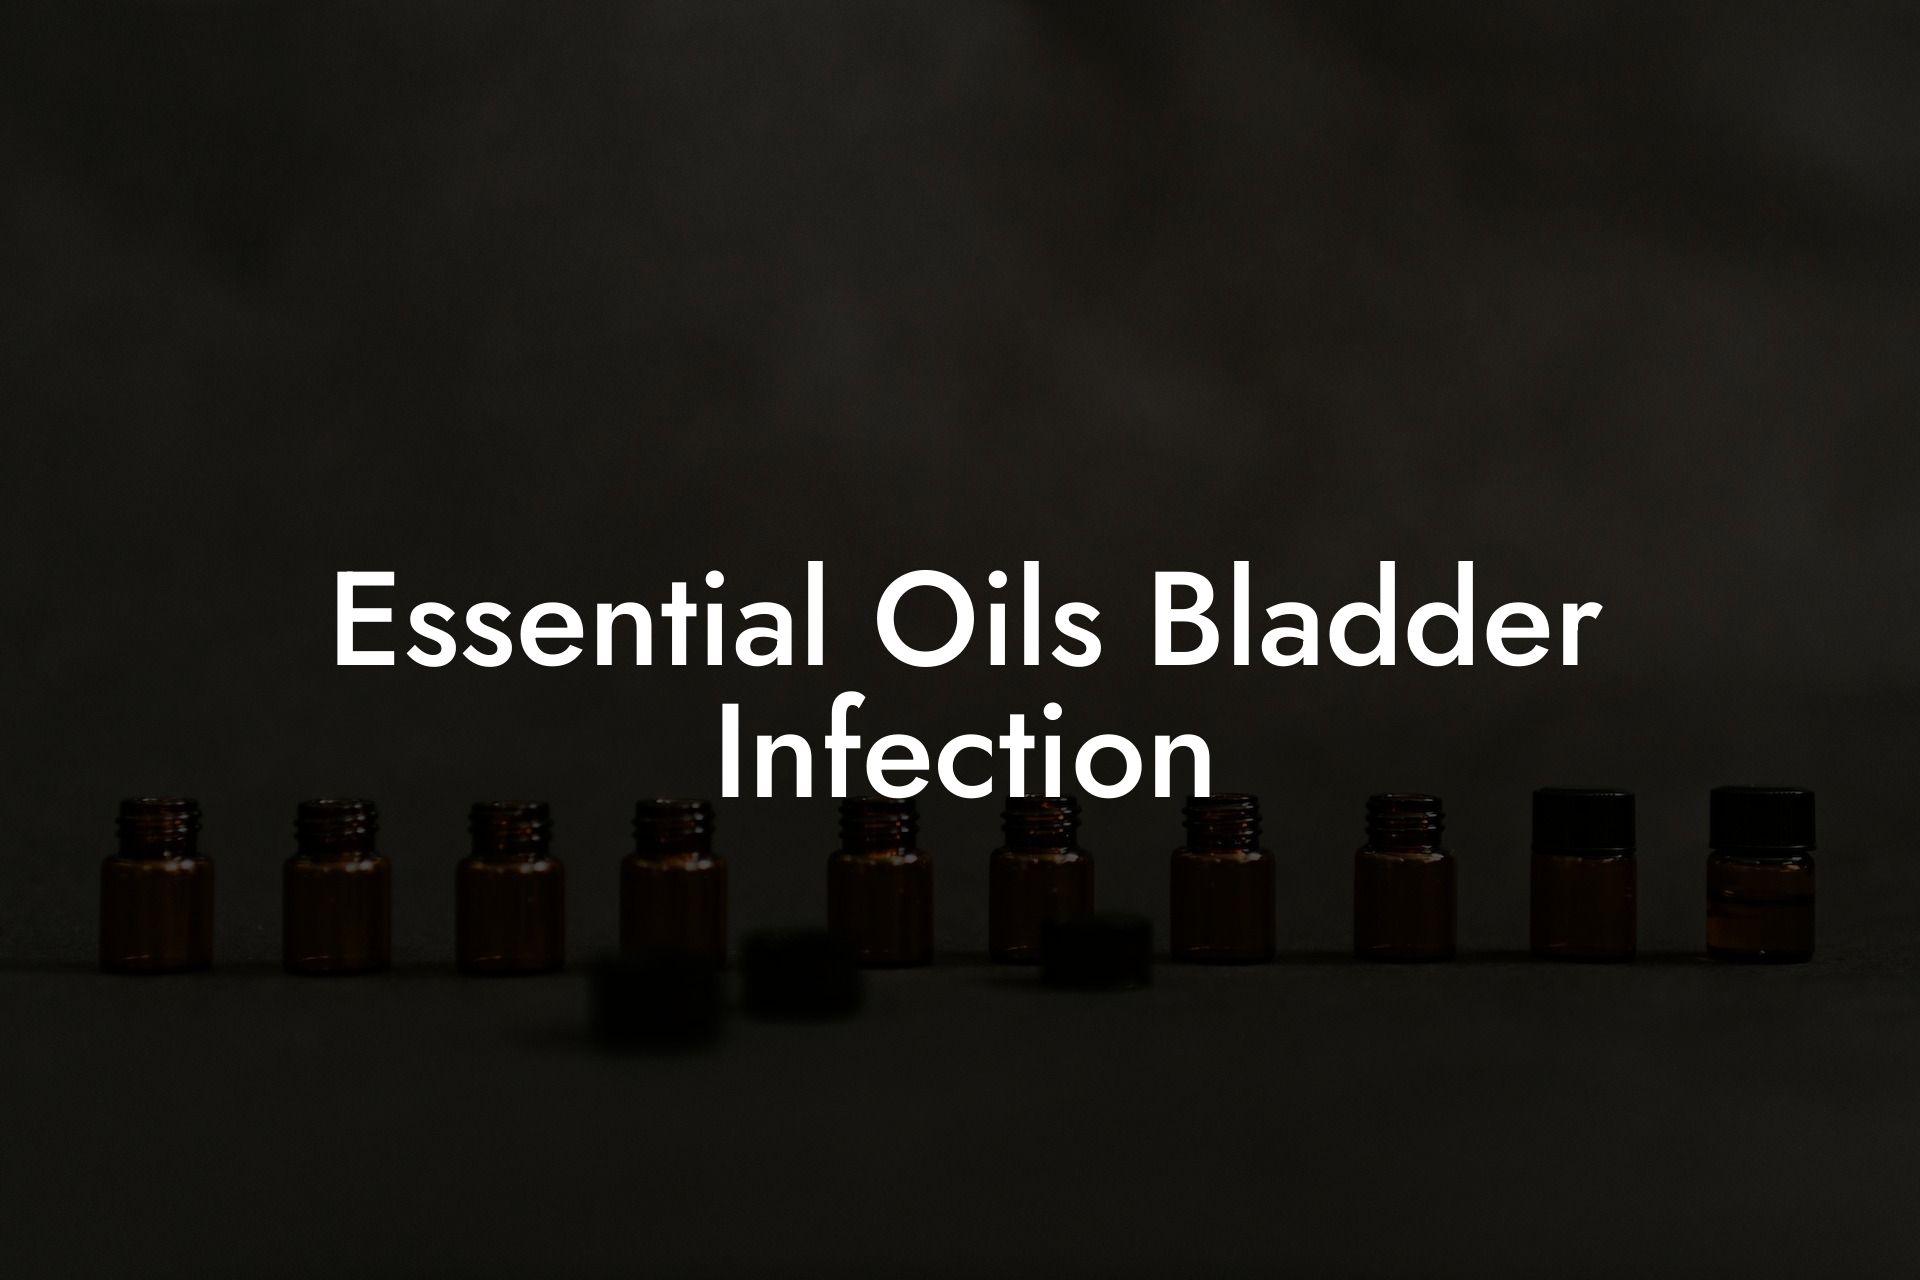 Essential Oils Bladder Infection